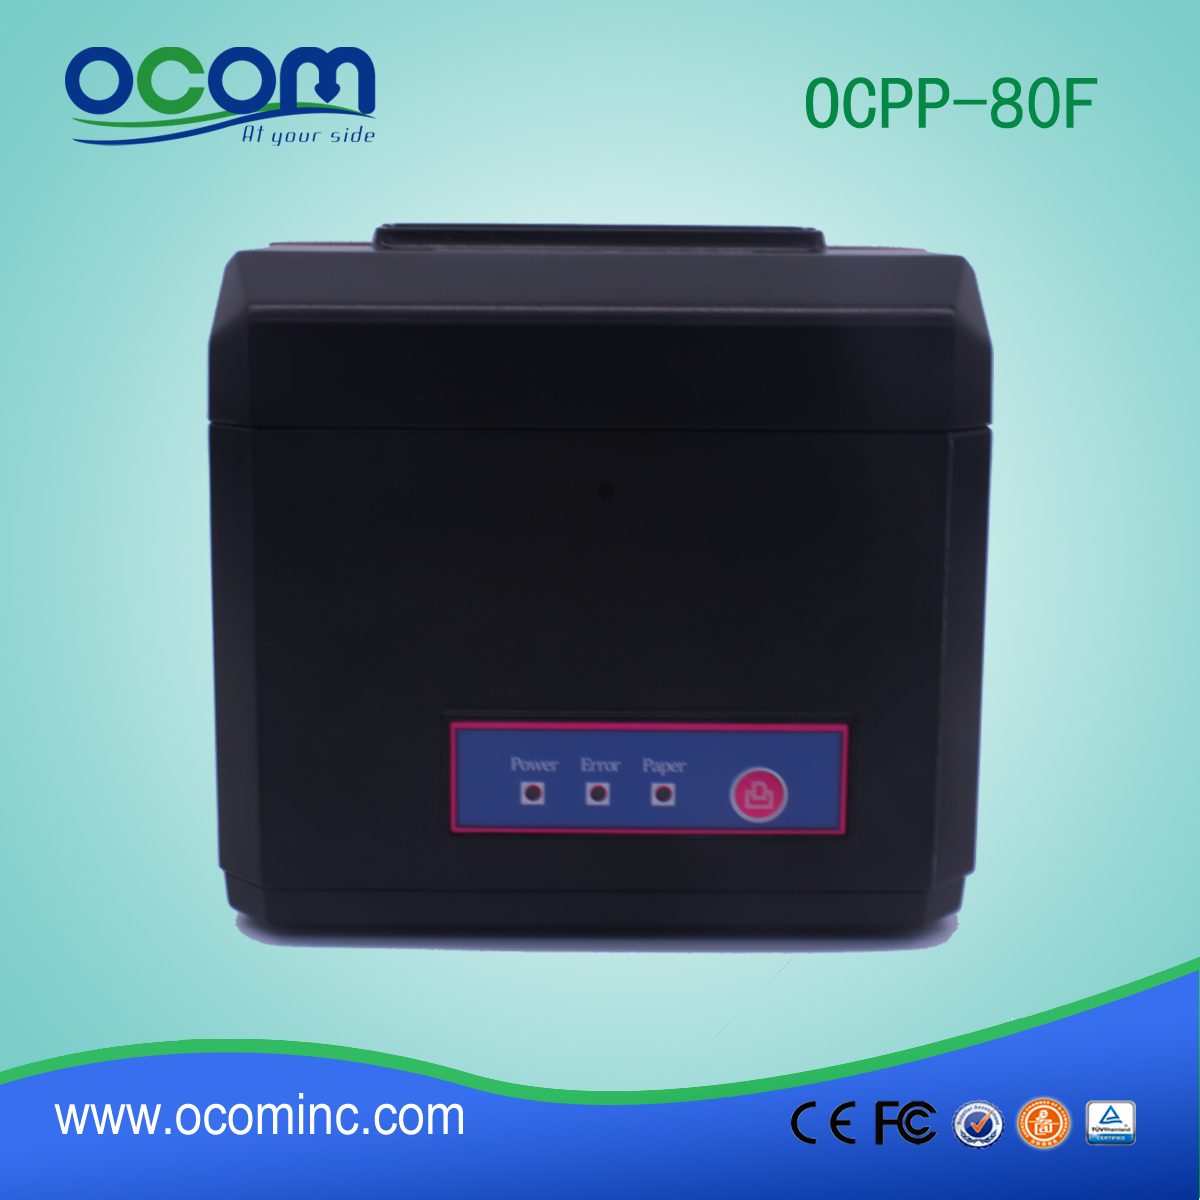 OCPP-80F العرض: 80mm أو 58mm وUSB نقاط البيع الحراري المحمول استلام الطابعة